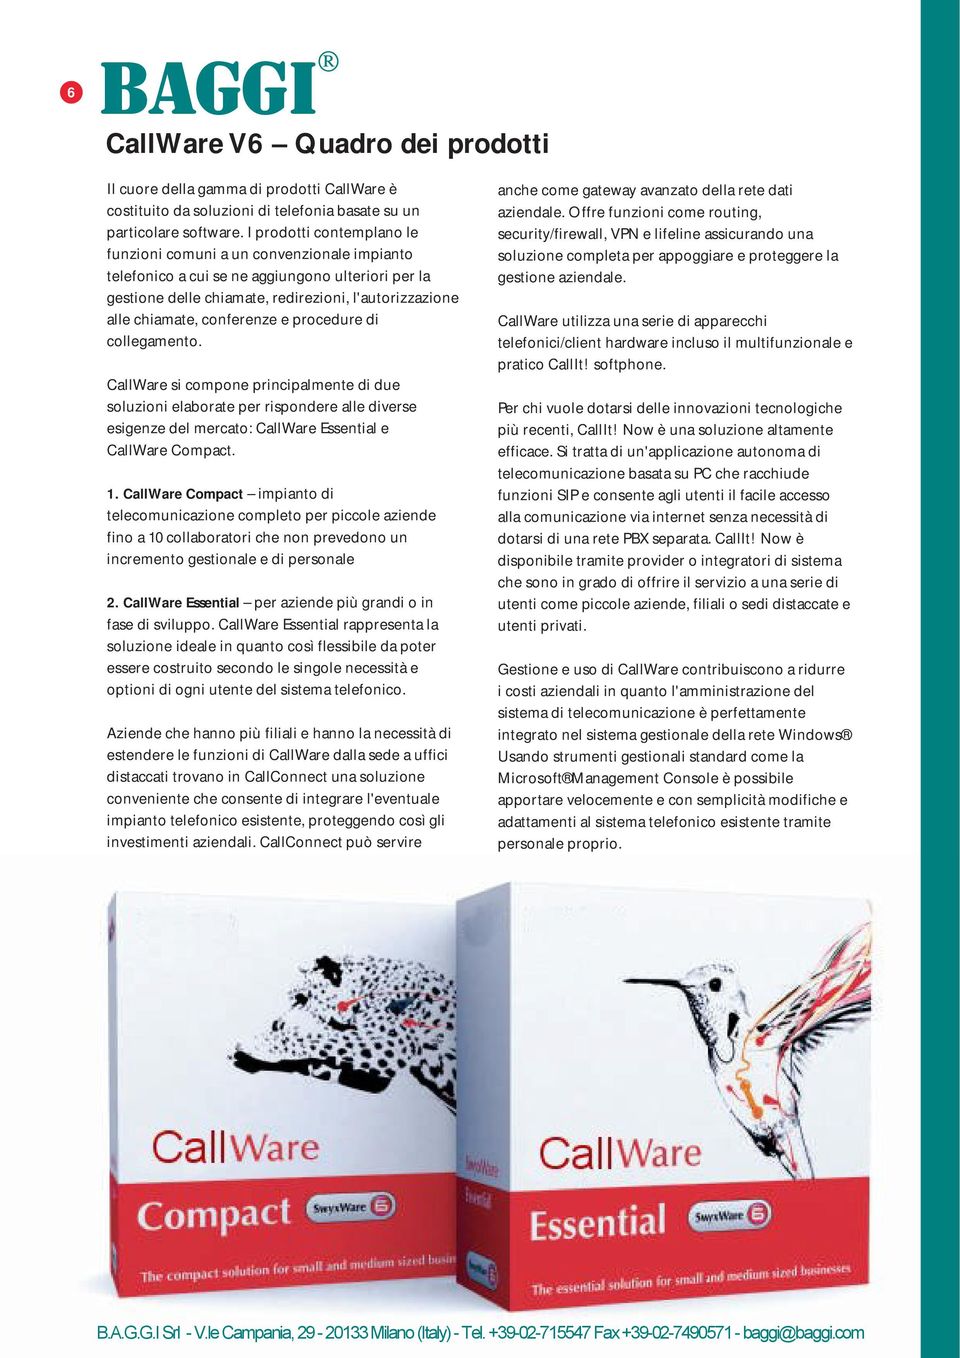 conferenze e procedure di collegamento. CallWare si compone principalmente di due soluzioni elaborate per rispondere alle diverse esigenze del mercato: CallWare Essential e CallWare Compact. 1.